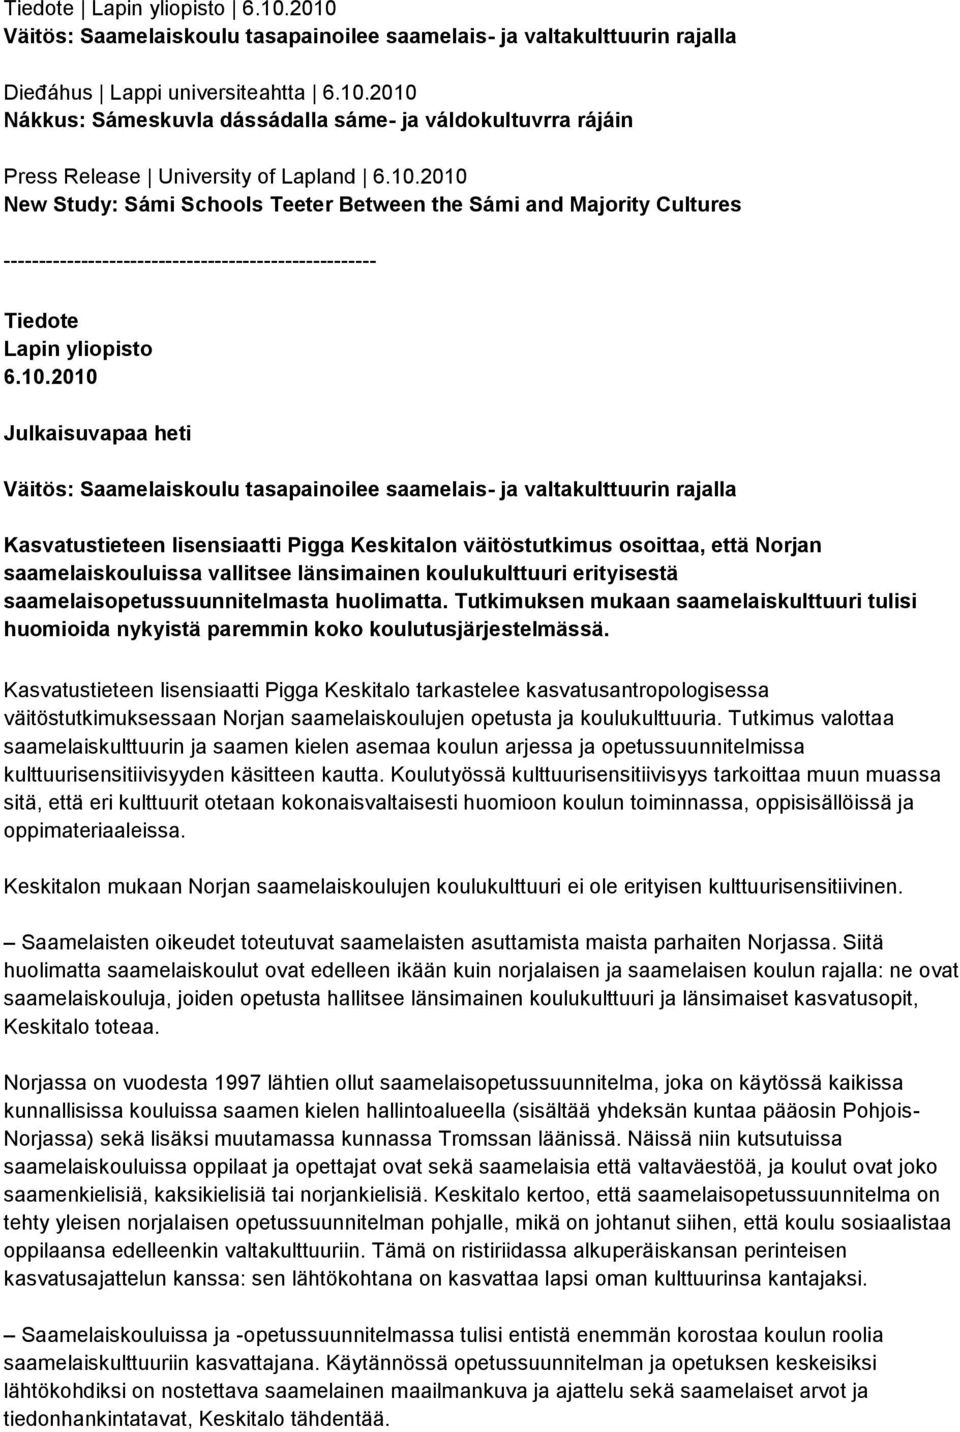 Saamelaiskoulu tasapainoilee saamelais- ja valtakulttuurin rajalla Kasvatustieteen lisensiaatti Pigga Keskitalon väitöstutkimus osoittaa, että Norjan saamelaiskouluissa vallitsee länsimainen